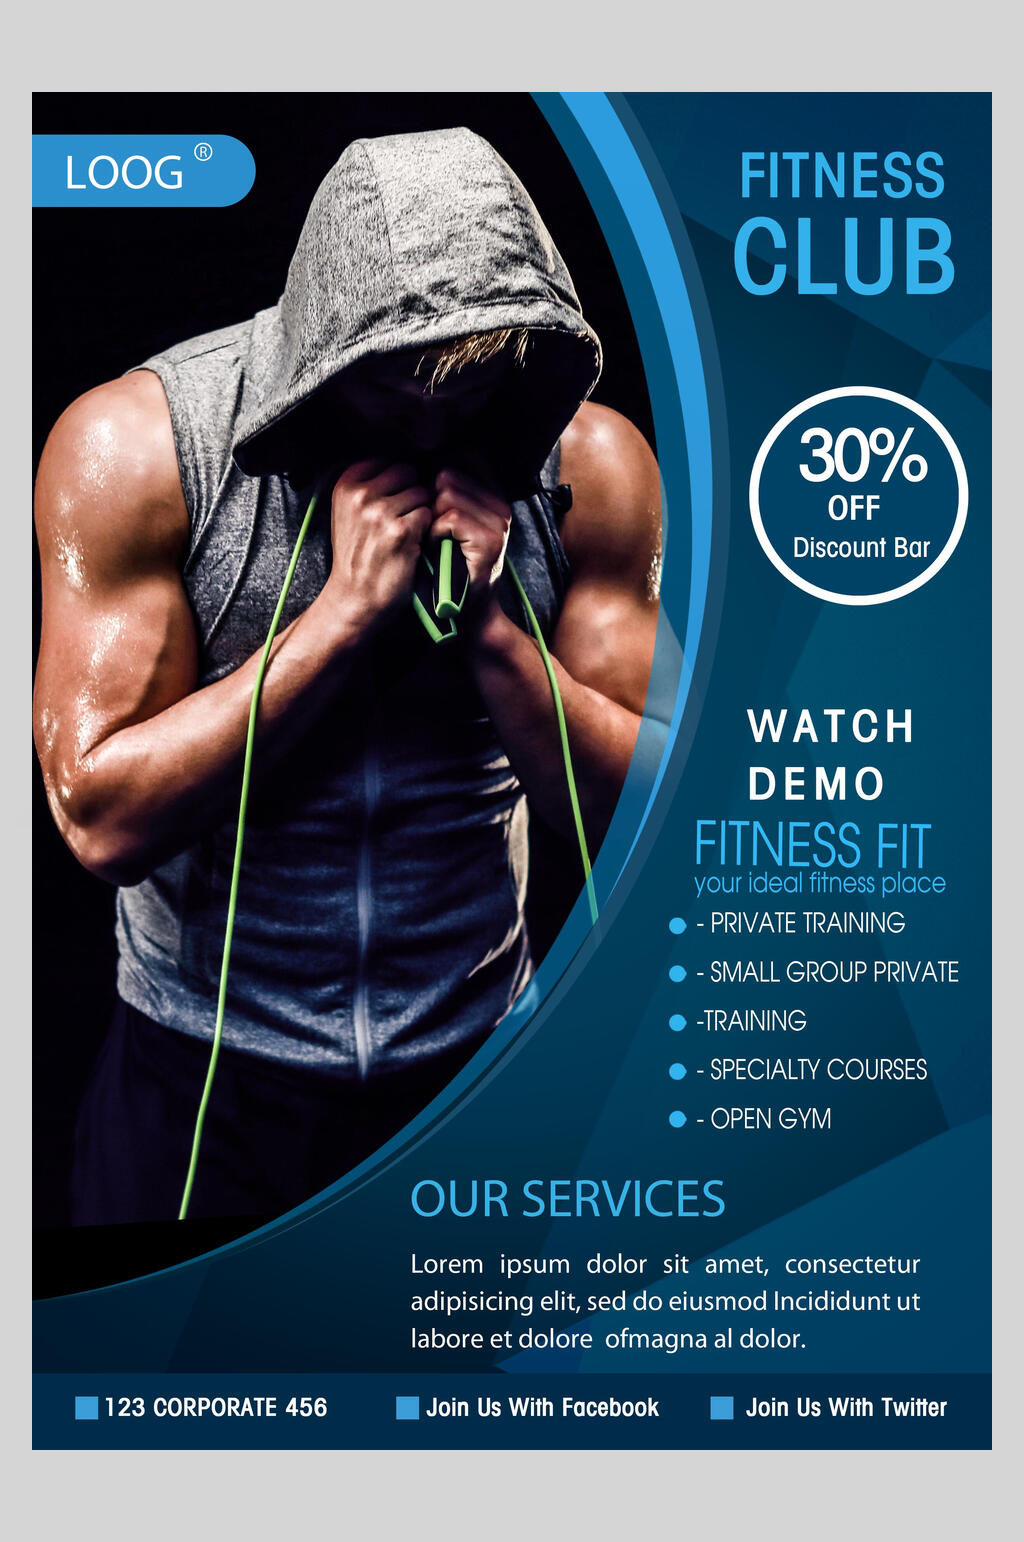 众图网独家提供健身俱乐部健身宣传单海报素材免费下载,本作品是由